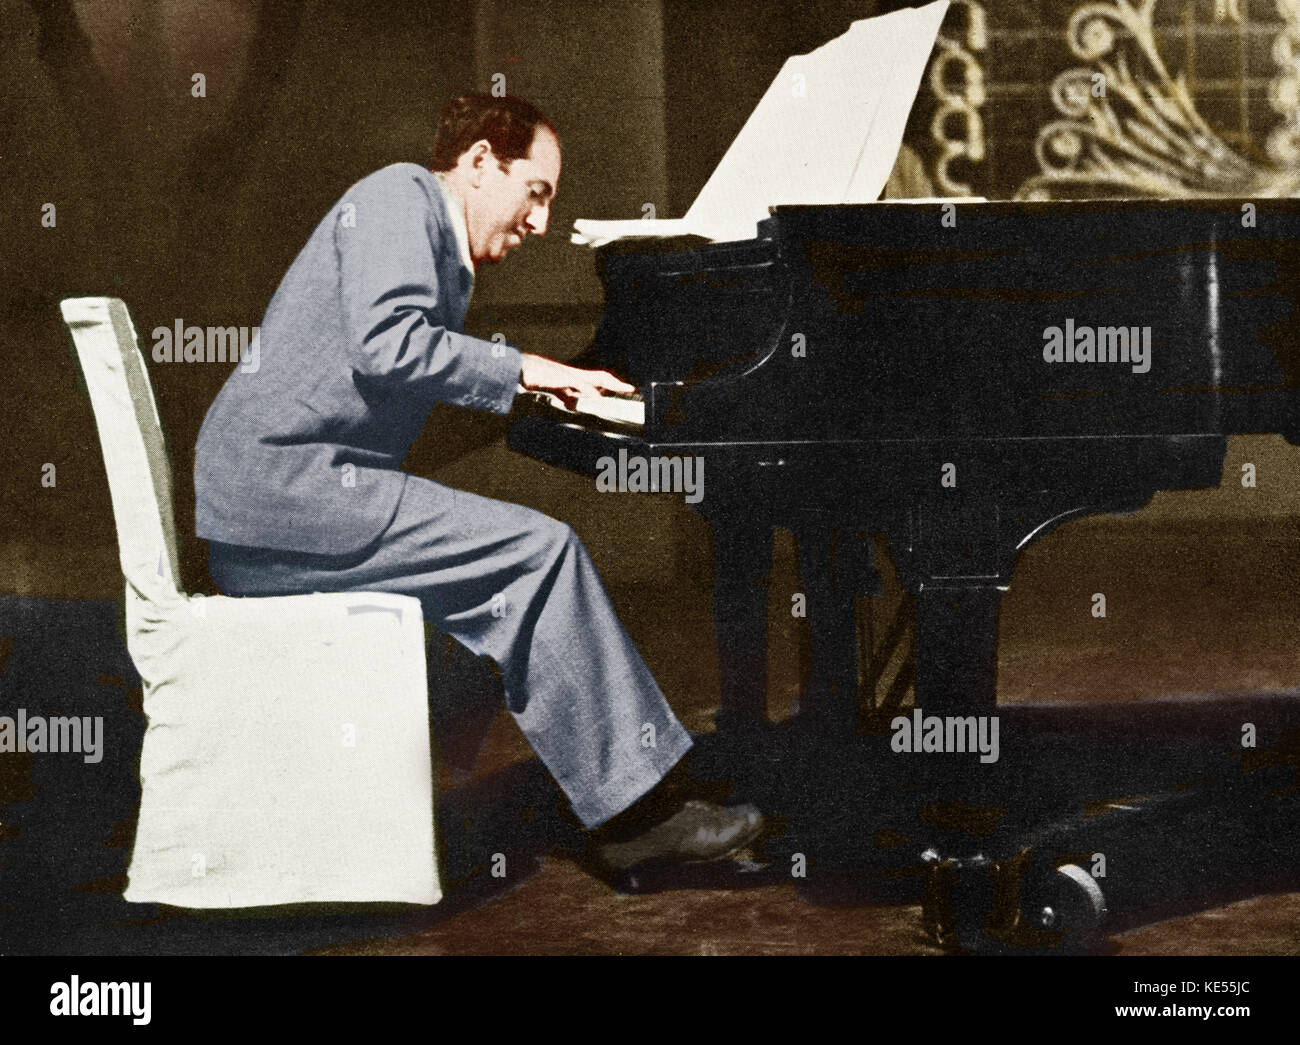 George Gershwin al piano en la RKO Studios de junio de 1937 - La última foto tomada de George Gershwin. Pianista y compositor norteamericano, el 26 de septiembre de 1898 - 11 de julio de 1937. Colourised versión. Foto de stock